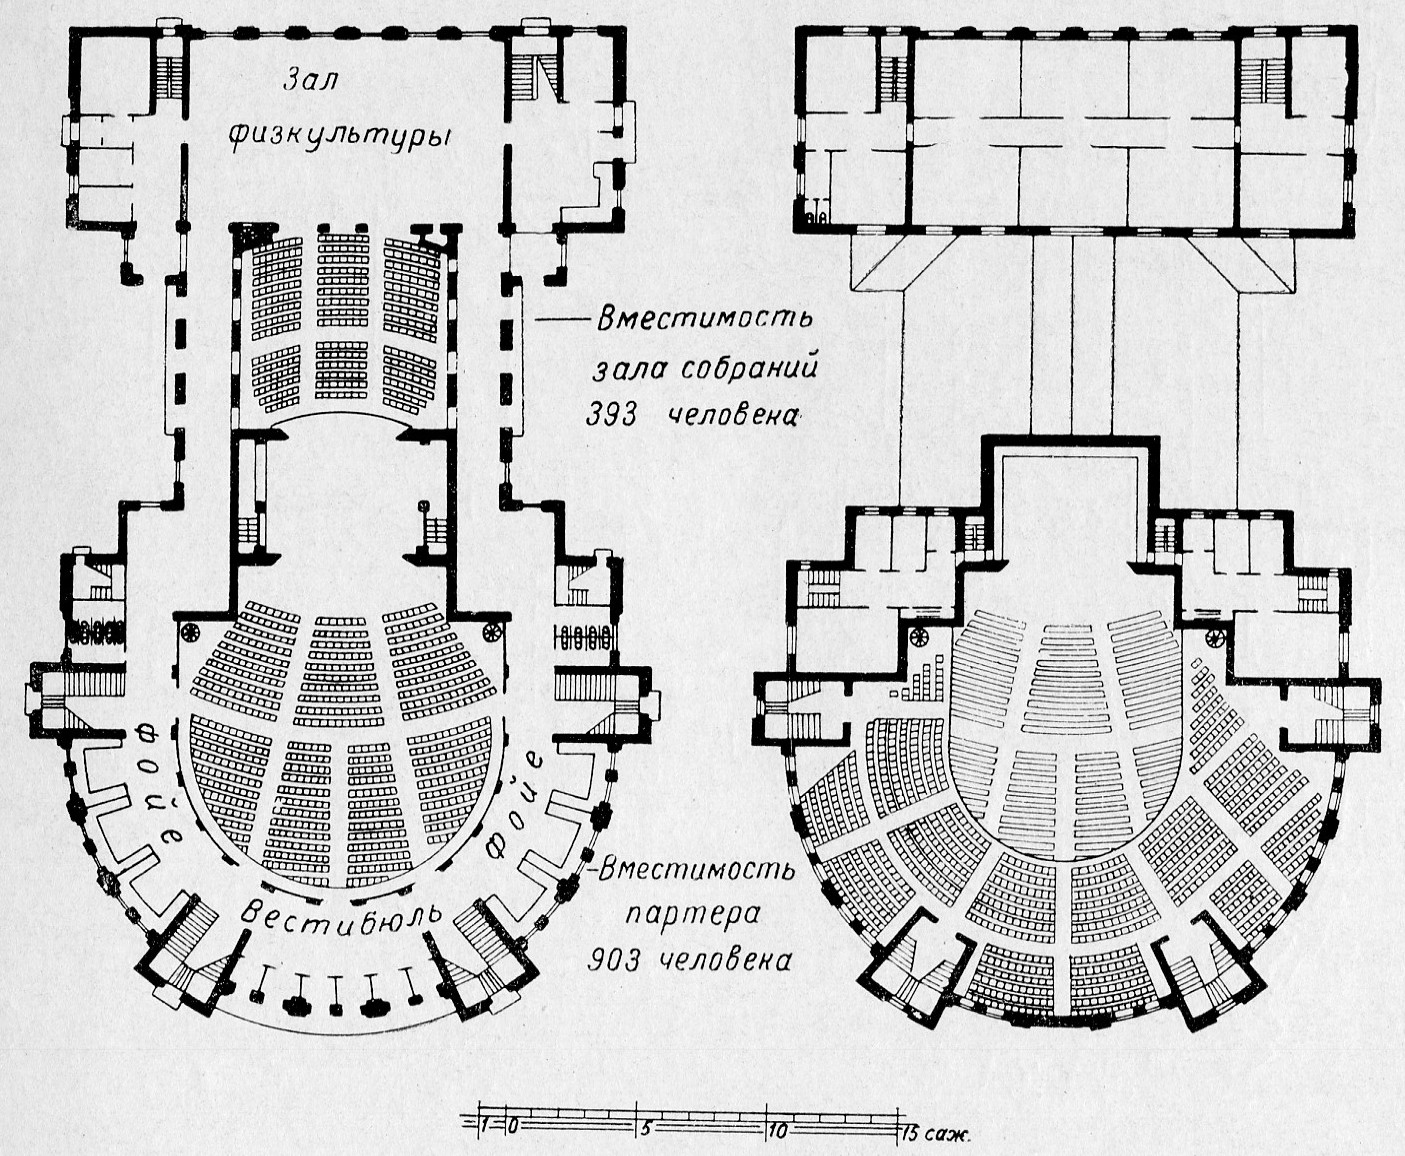 Фасад и планы первого и второго этажей. Второй вариант проекта (симметричный, компактный прием)